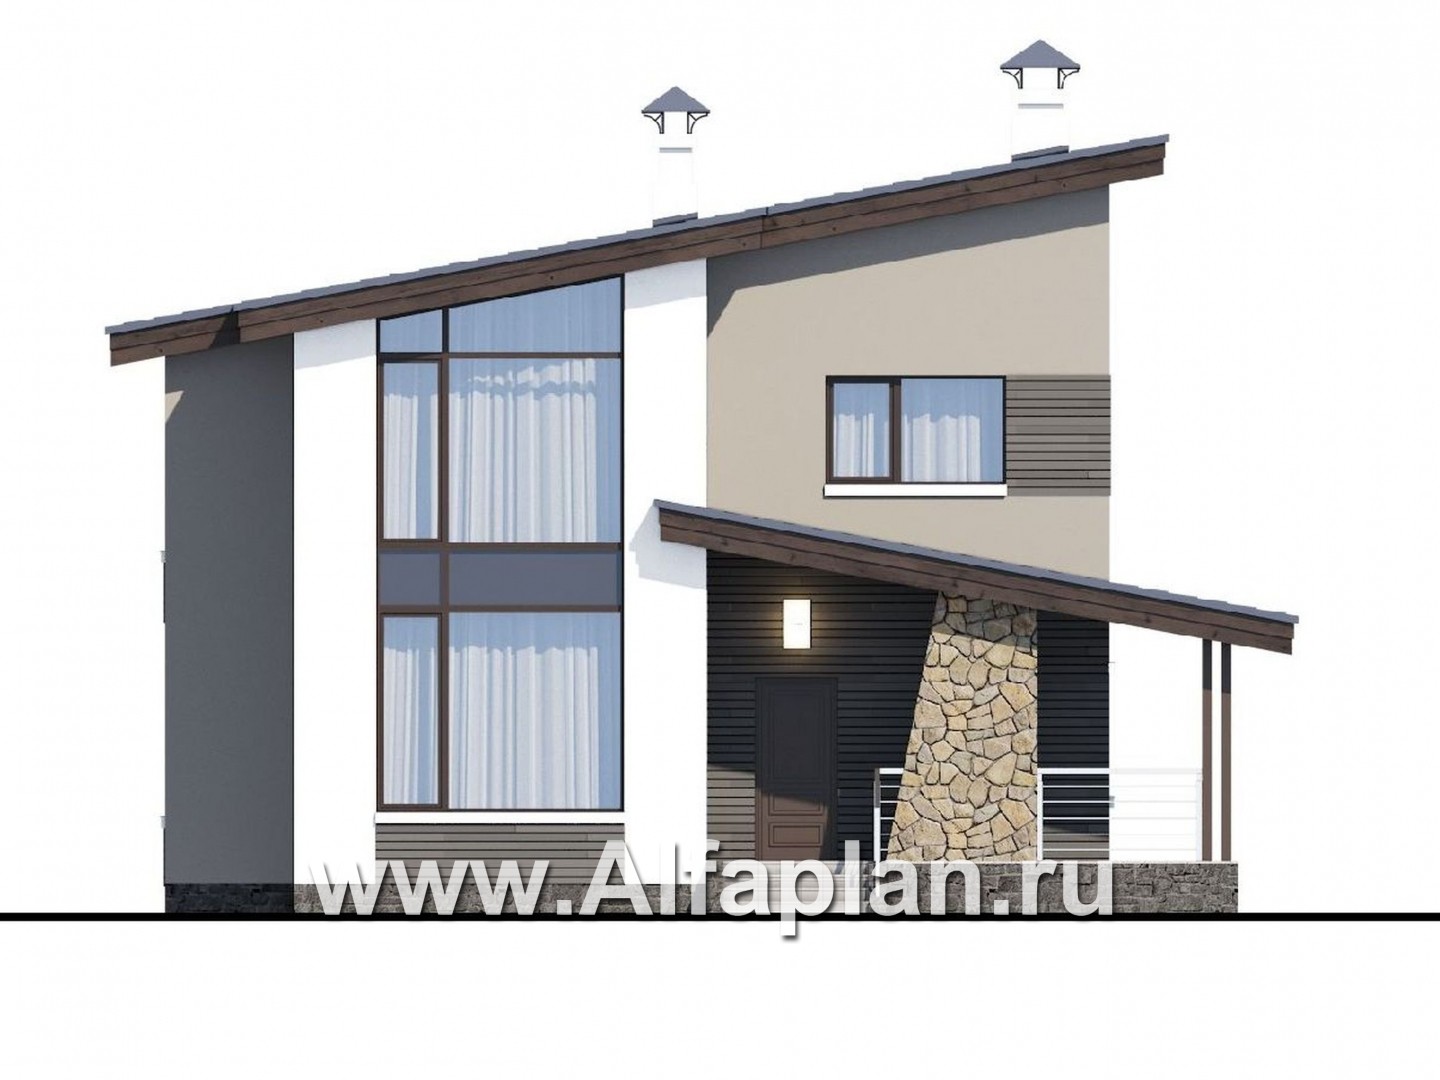 «Борей» - проект двухэтажного дома с террасой, планировка с кабинетом на 1 эт, в современном стиле с односкатной крышей - фасад дома